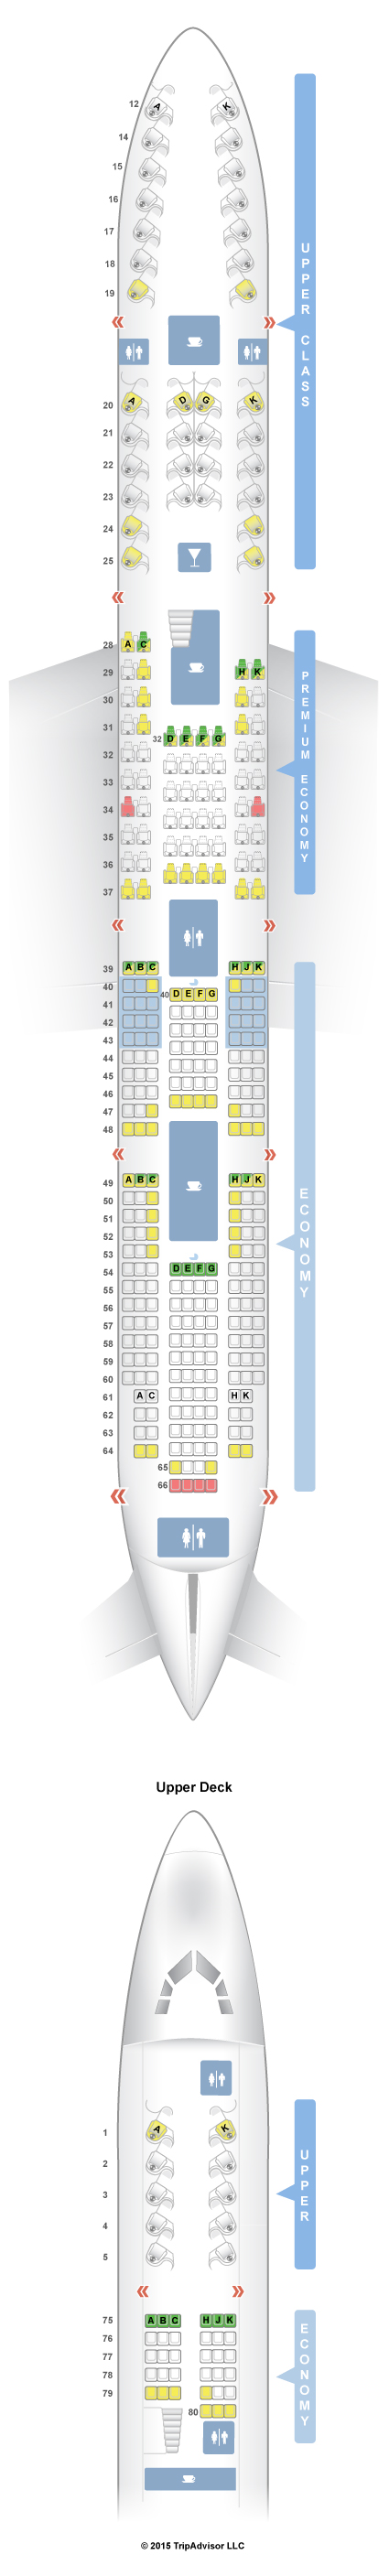 Atlantic 747 Seating Chart